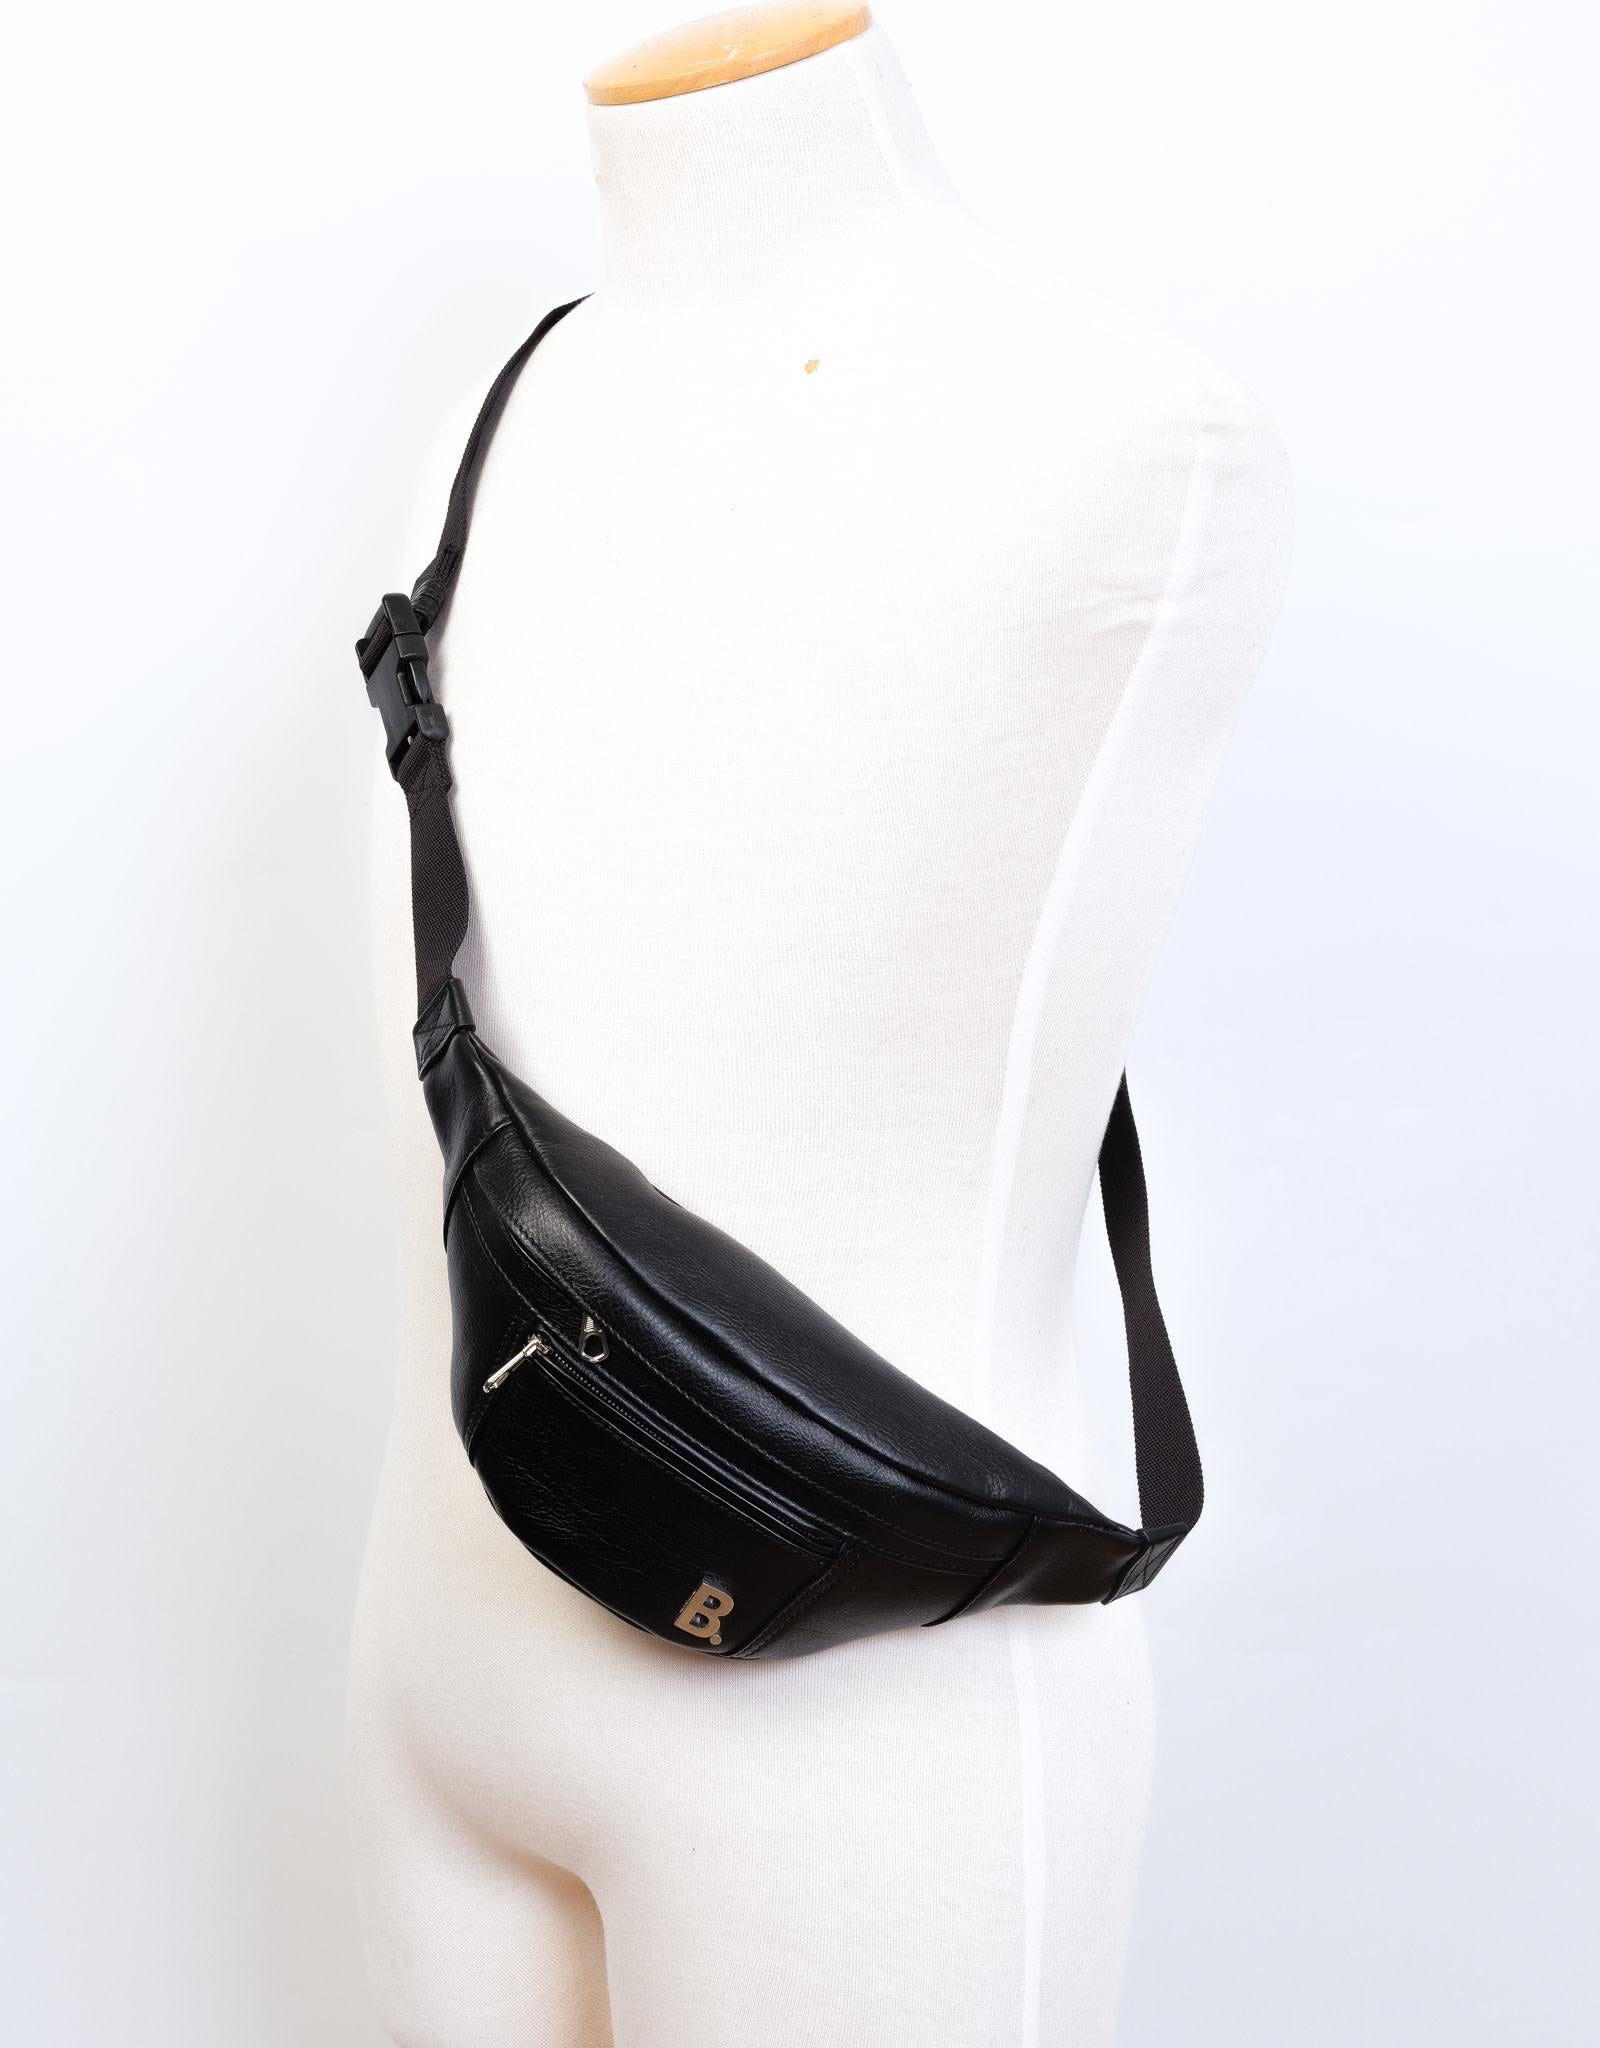 Ce sac ceinture est en cuir noir et présente une fermeture zippée sur le dessus, une poche zippée sur le devant, une plaque logo en métal sur le devant et des accessoires de couleur argentée.

COULEUR : Noir
CODE DE L'ÉLÉMENT : 530028 1000 W